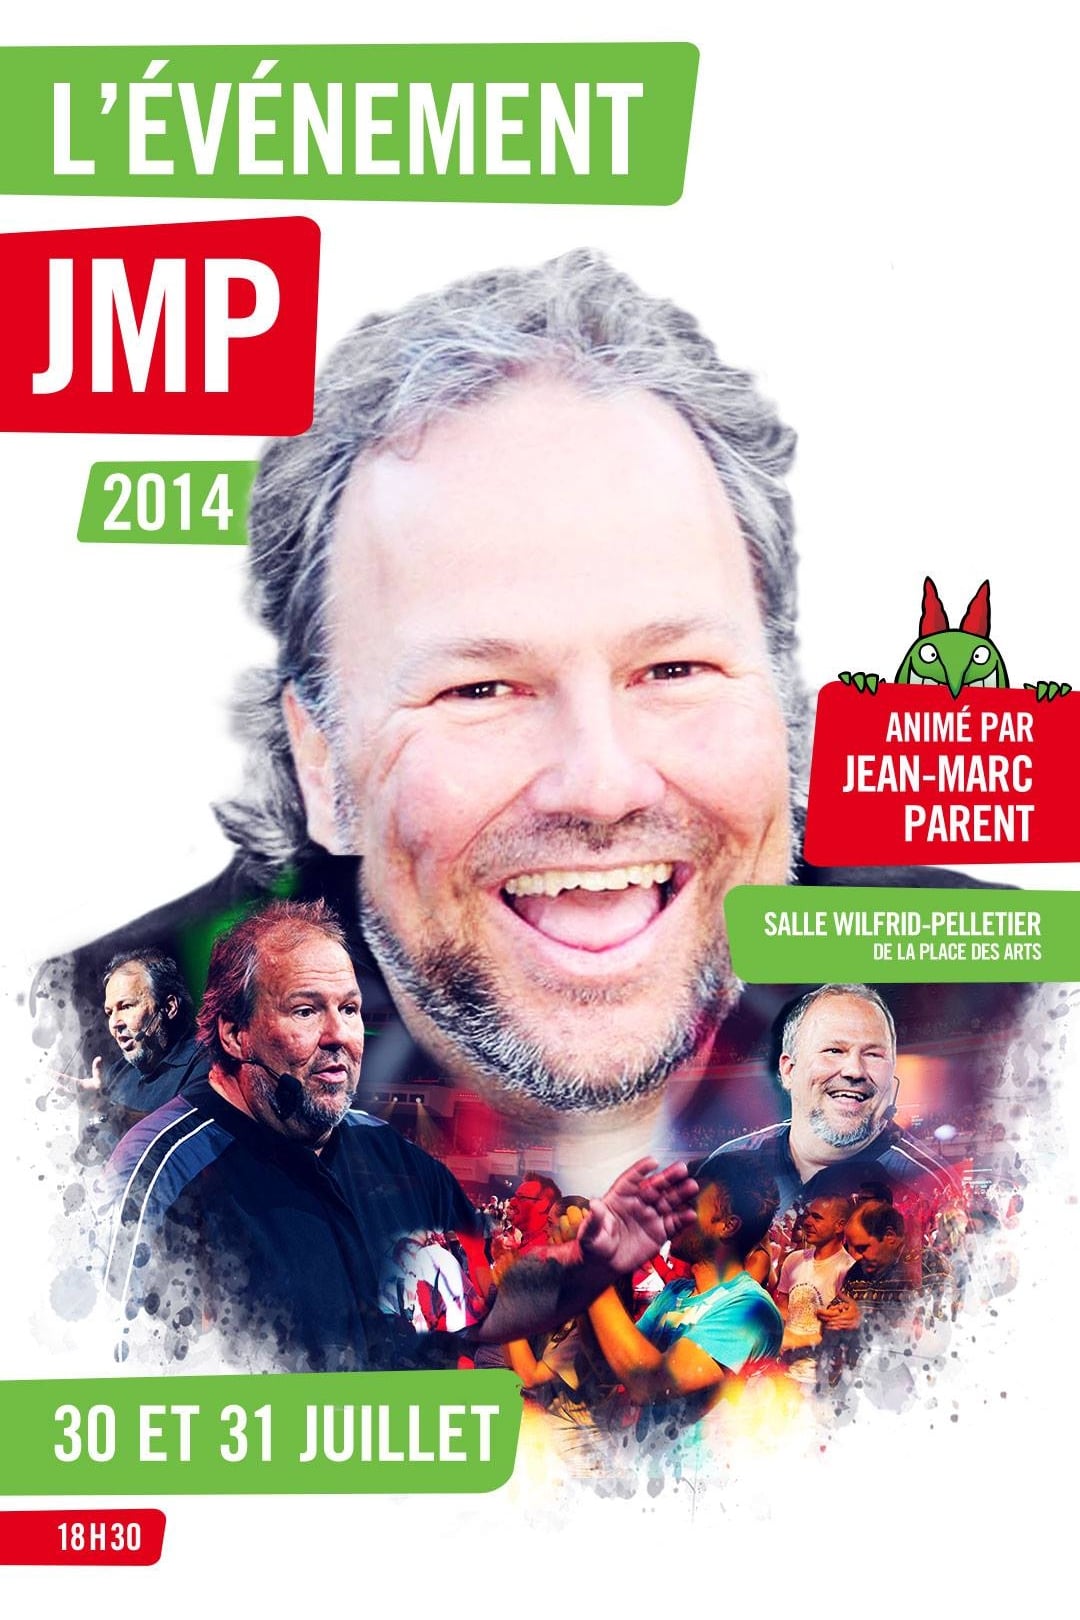 Juste pour rire 2014 - Évènement JMP